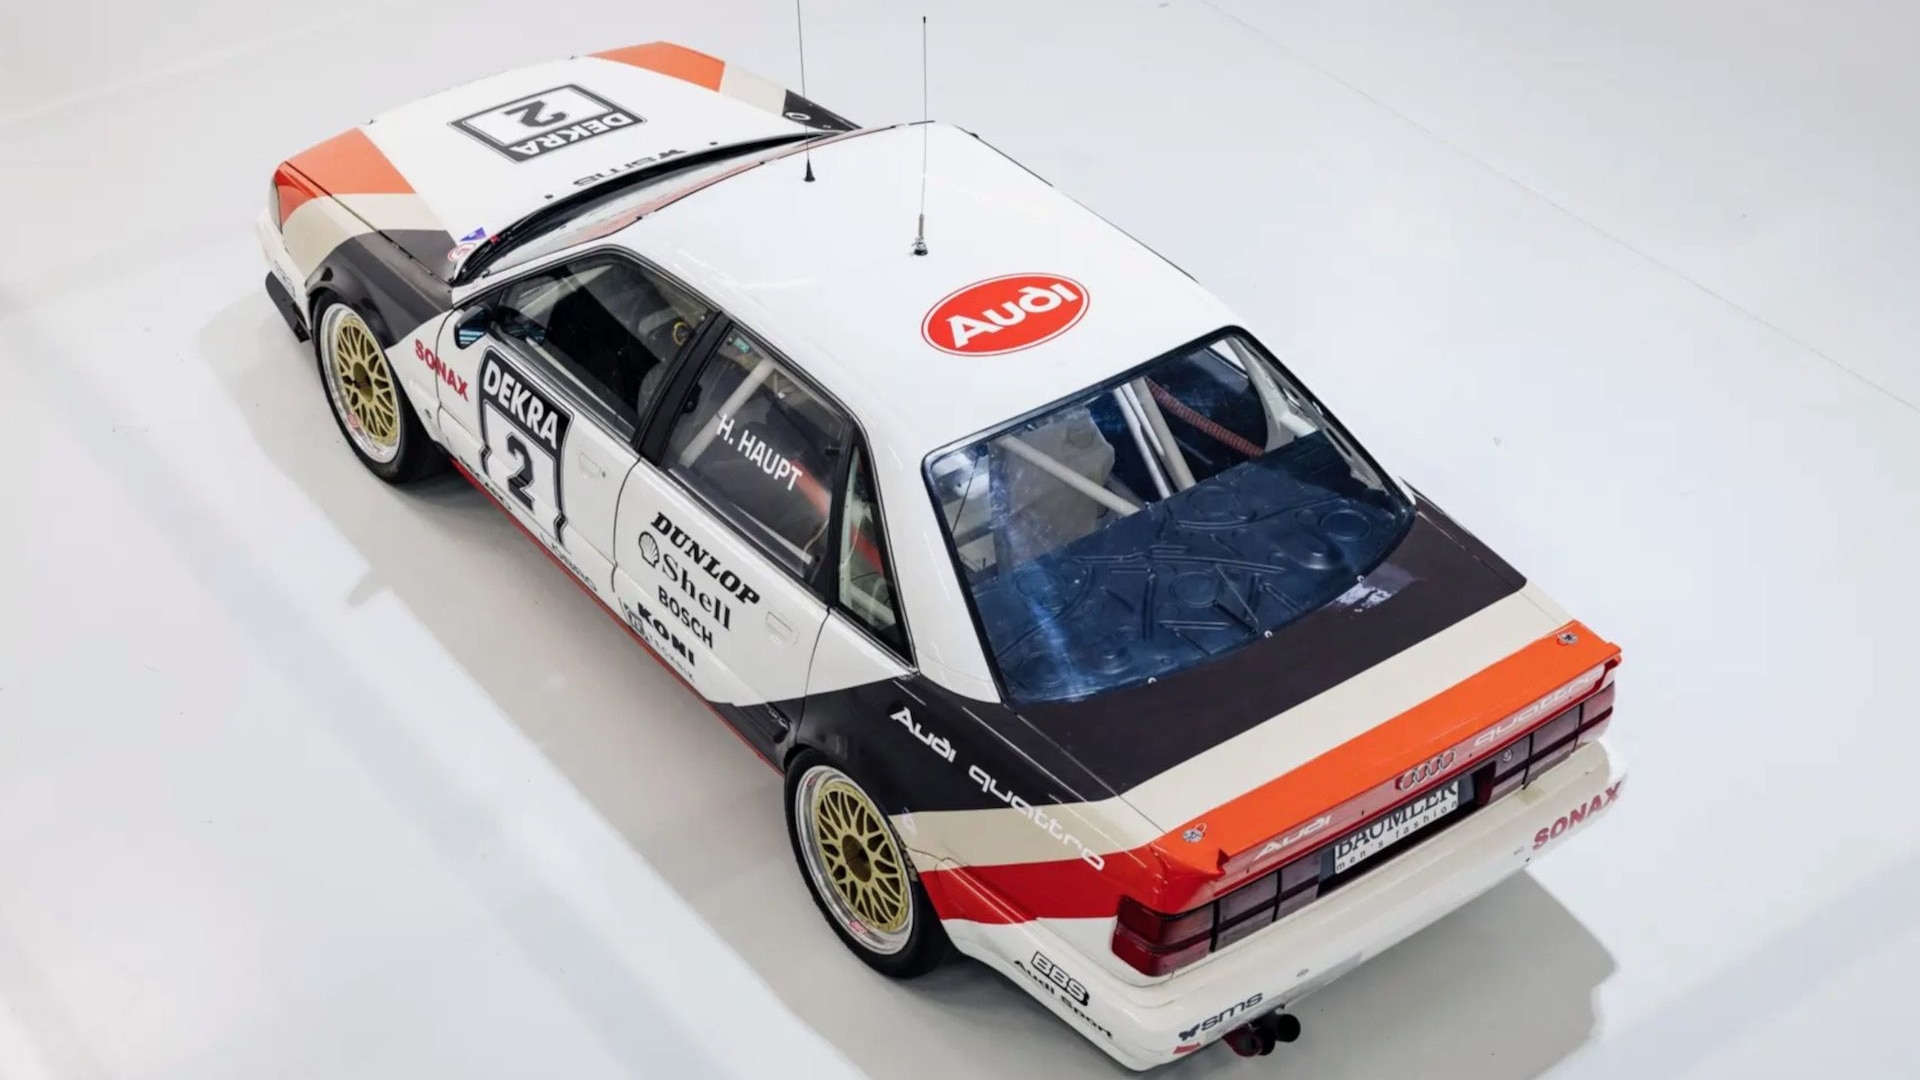 1991 Audi V8 Quattro DTM race car (image via RM Sotheby's)